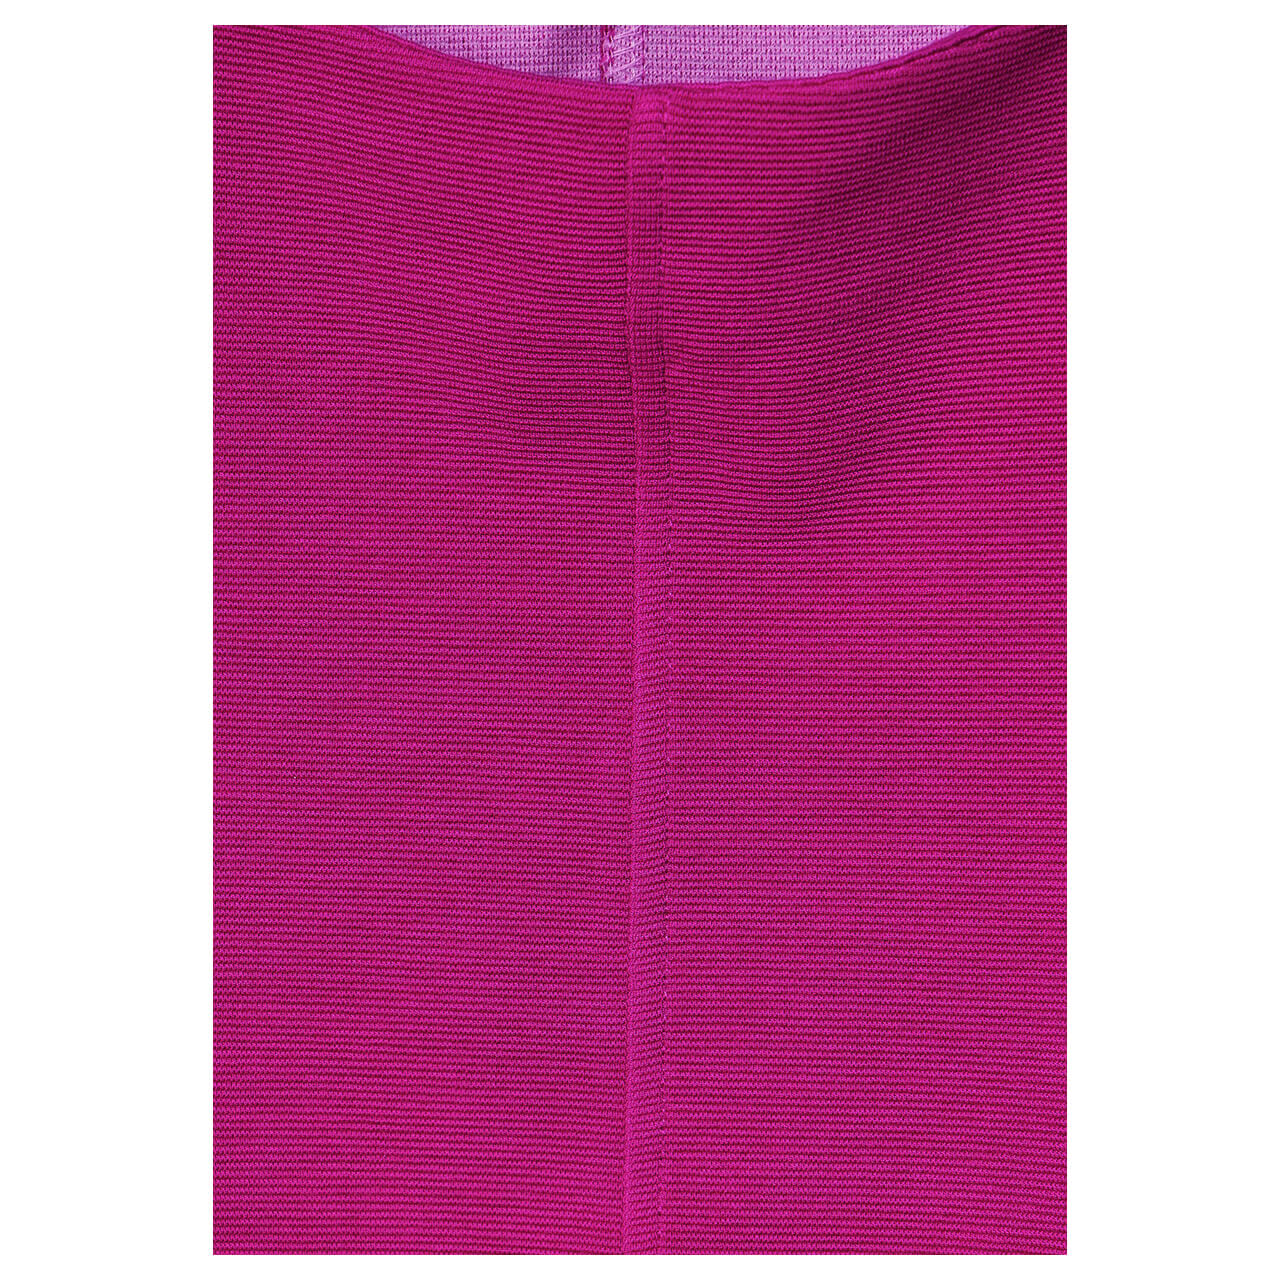 Street One Damen 3/4 Arm Sweatshirt Fine Structure bright cozy pink